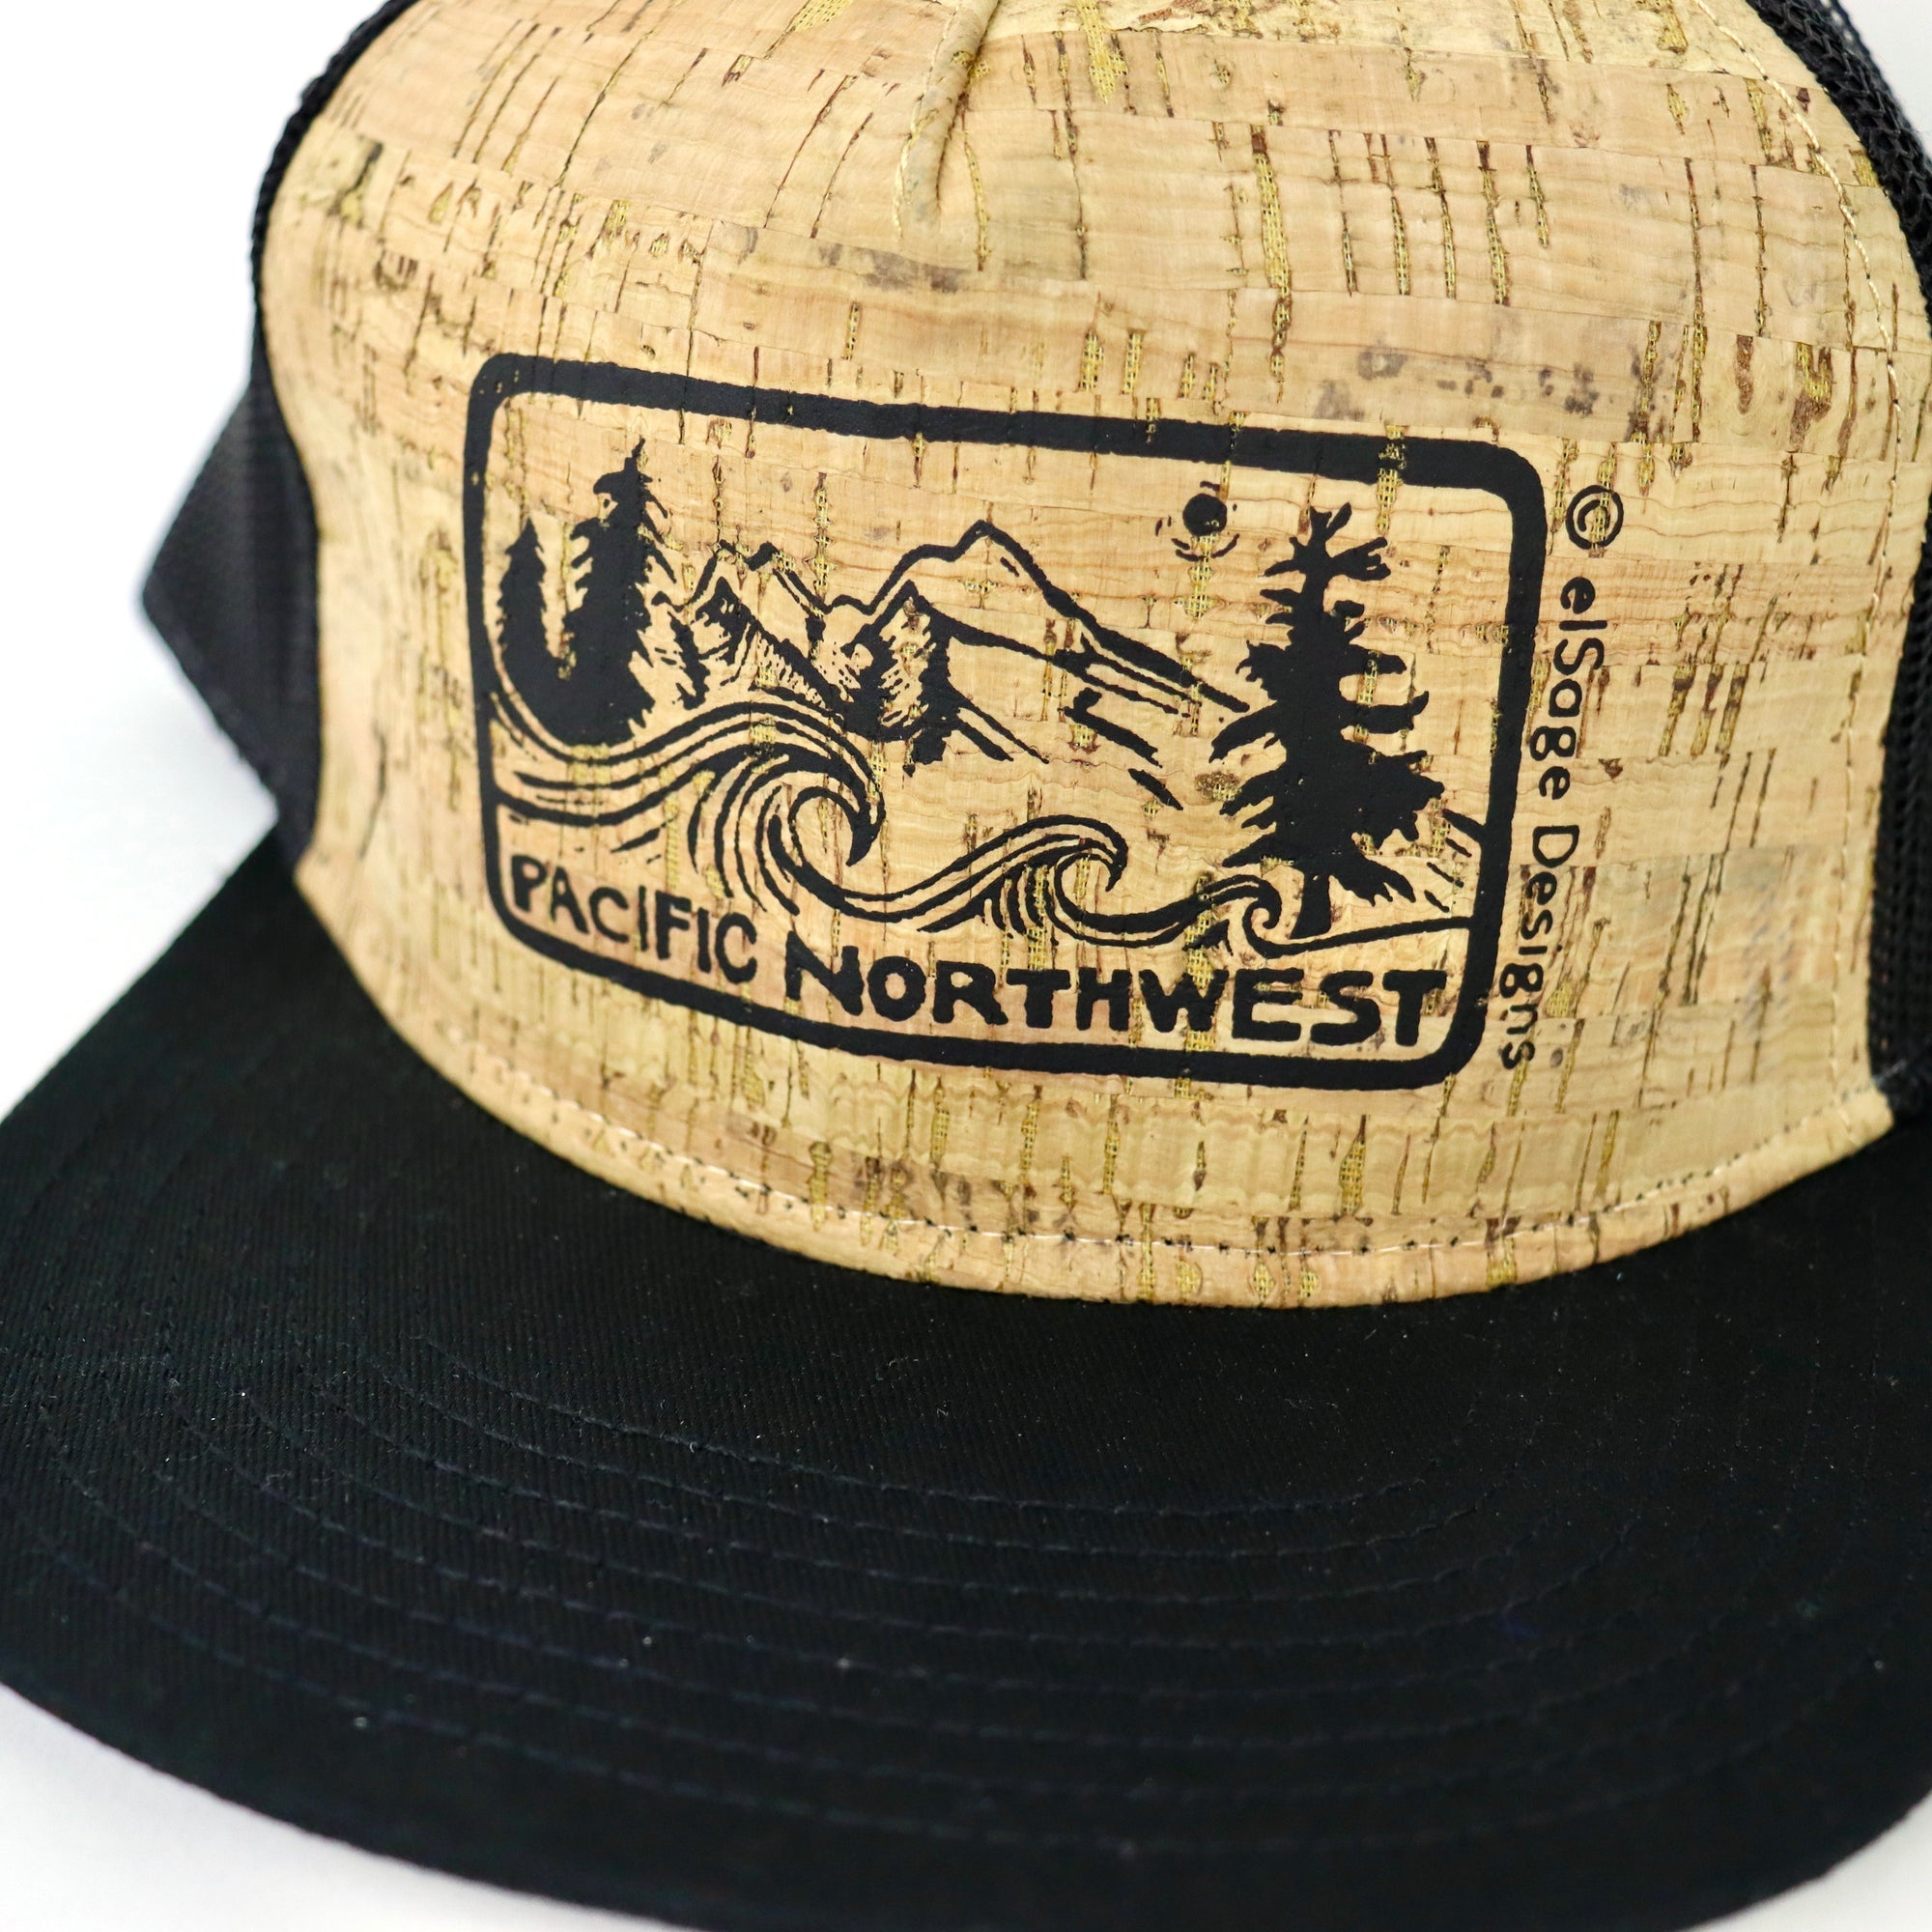 Pacific Northwest 2.0 (Phoebe's Version) Cork Trucker Hat